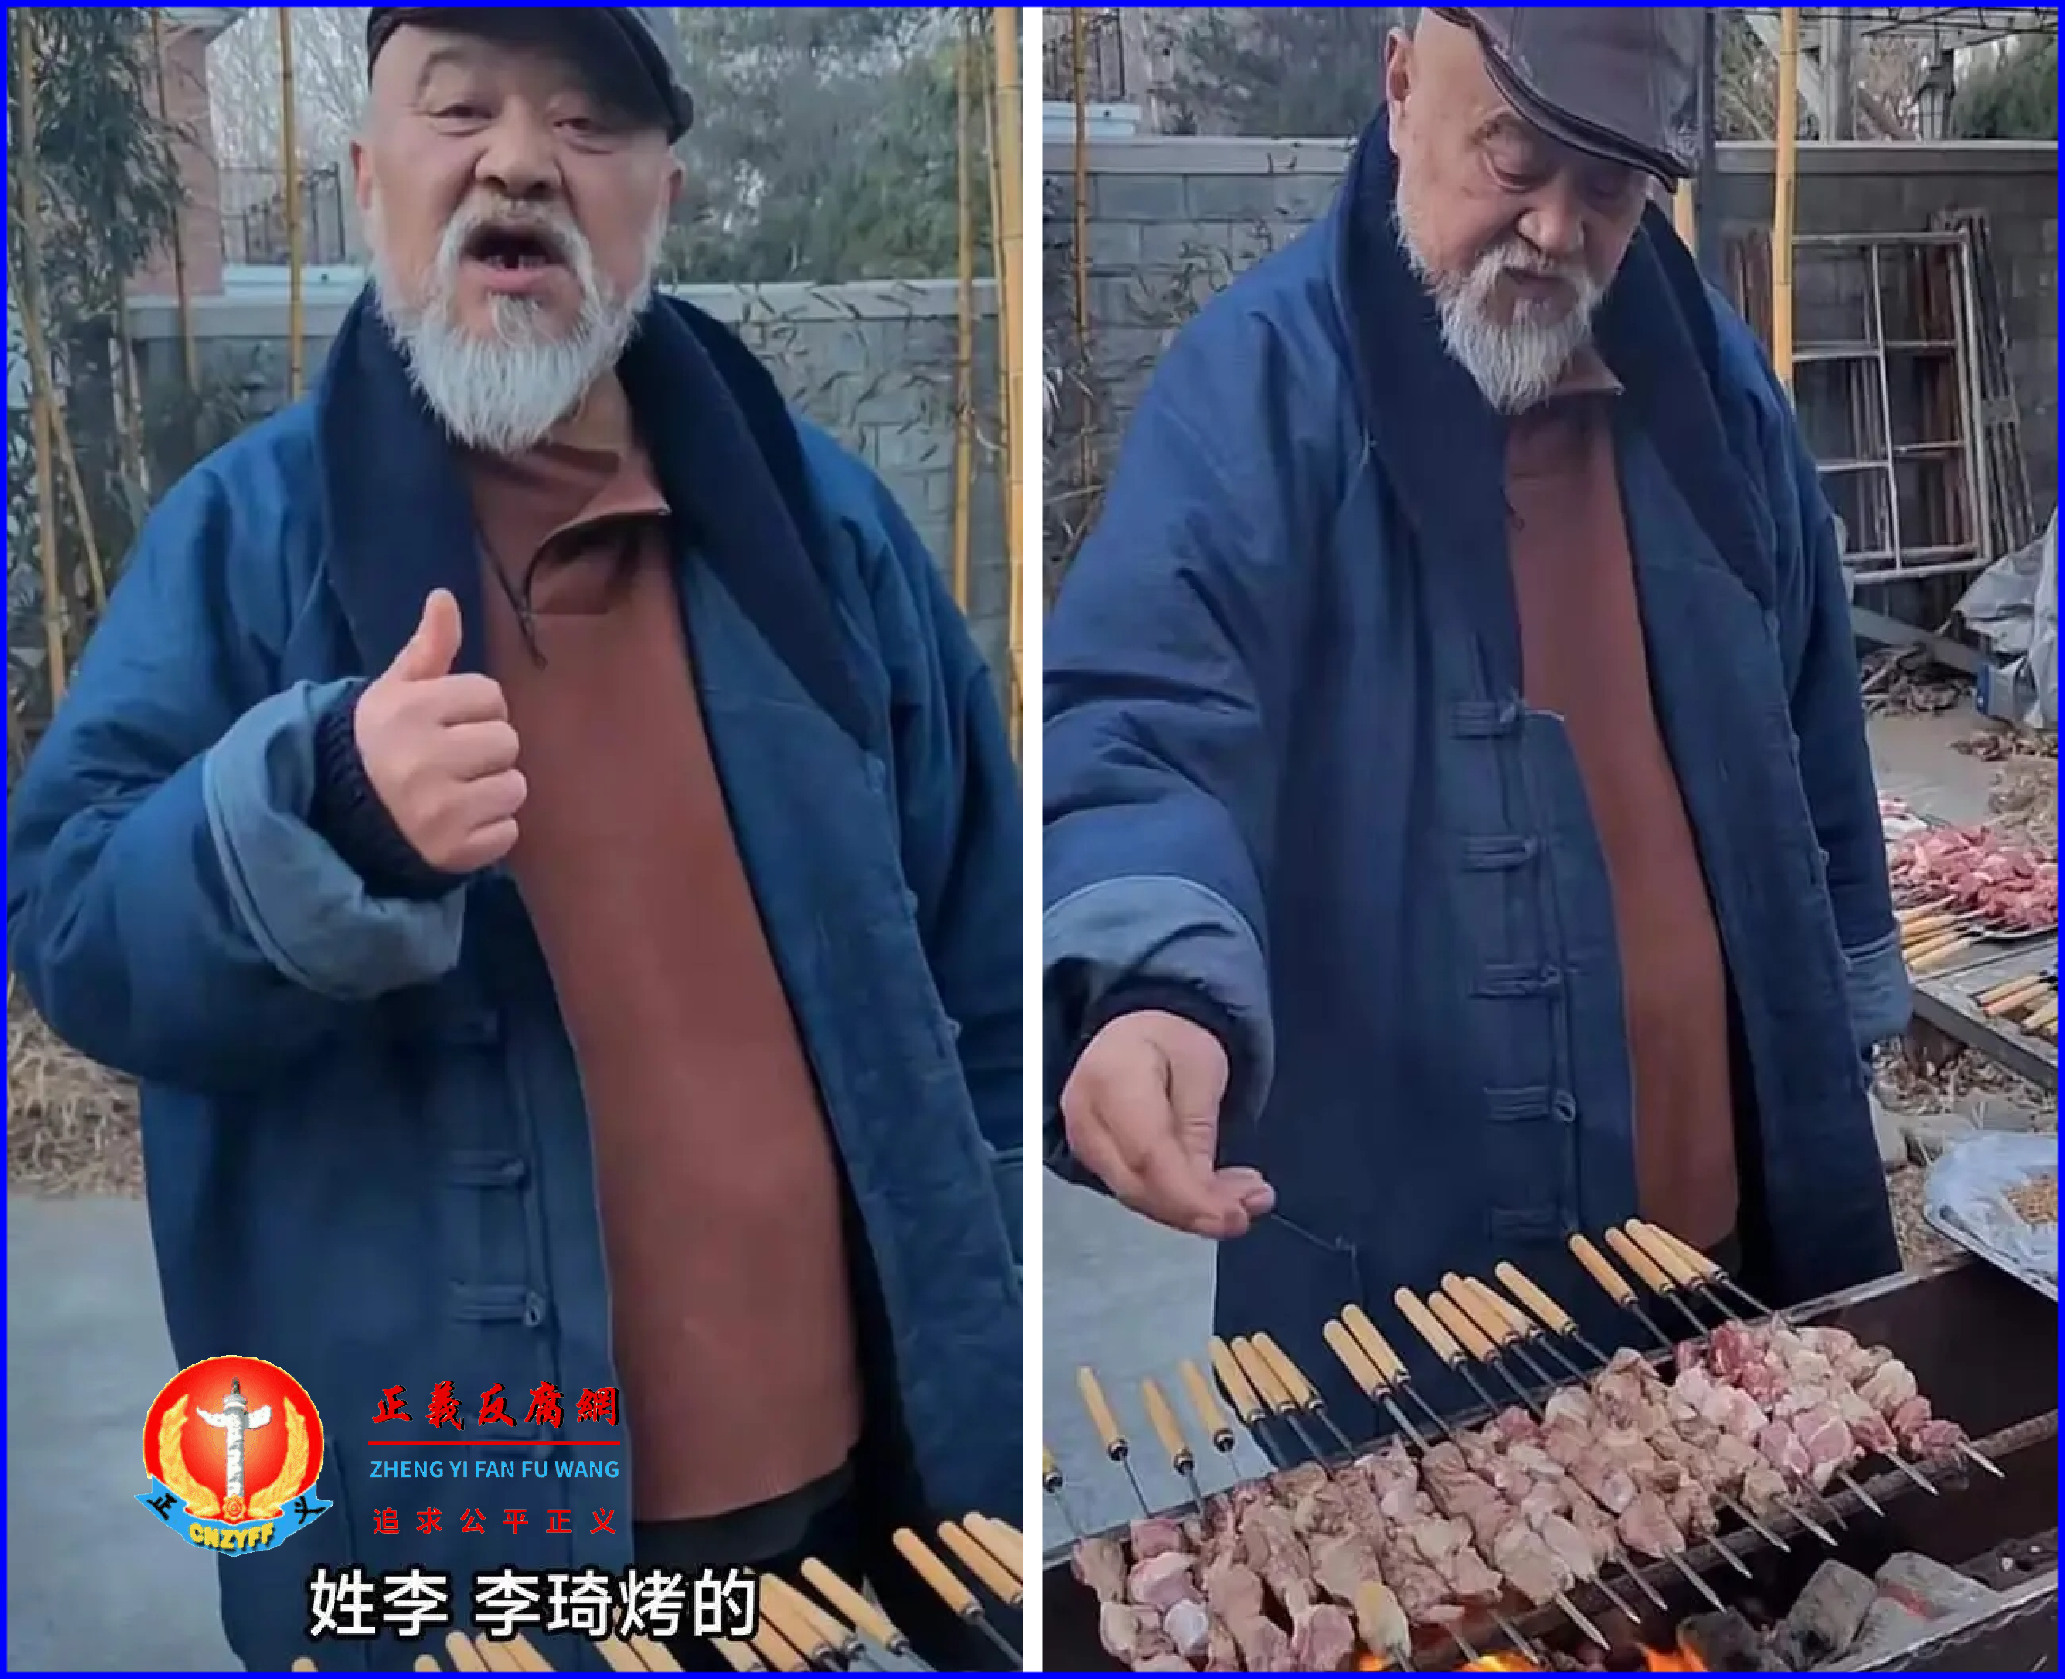 老戏骨李琦无戏拍，在北京摆摊卖烤串。竖起大拇指对客人自我介绍说：“我姓李，李琦烤的。”.png